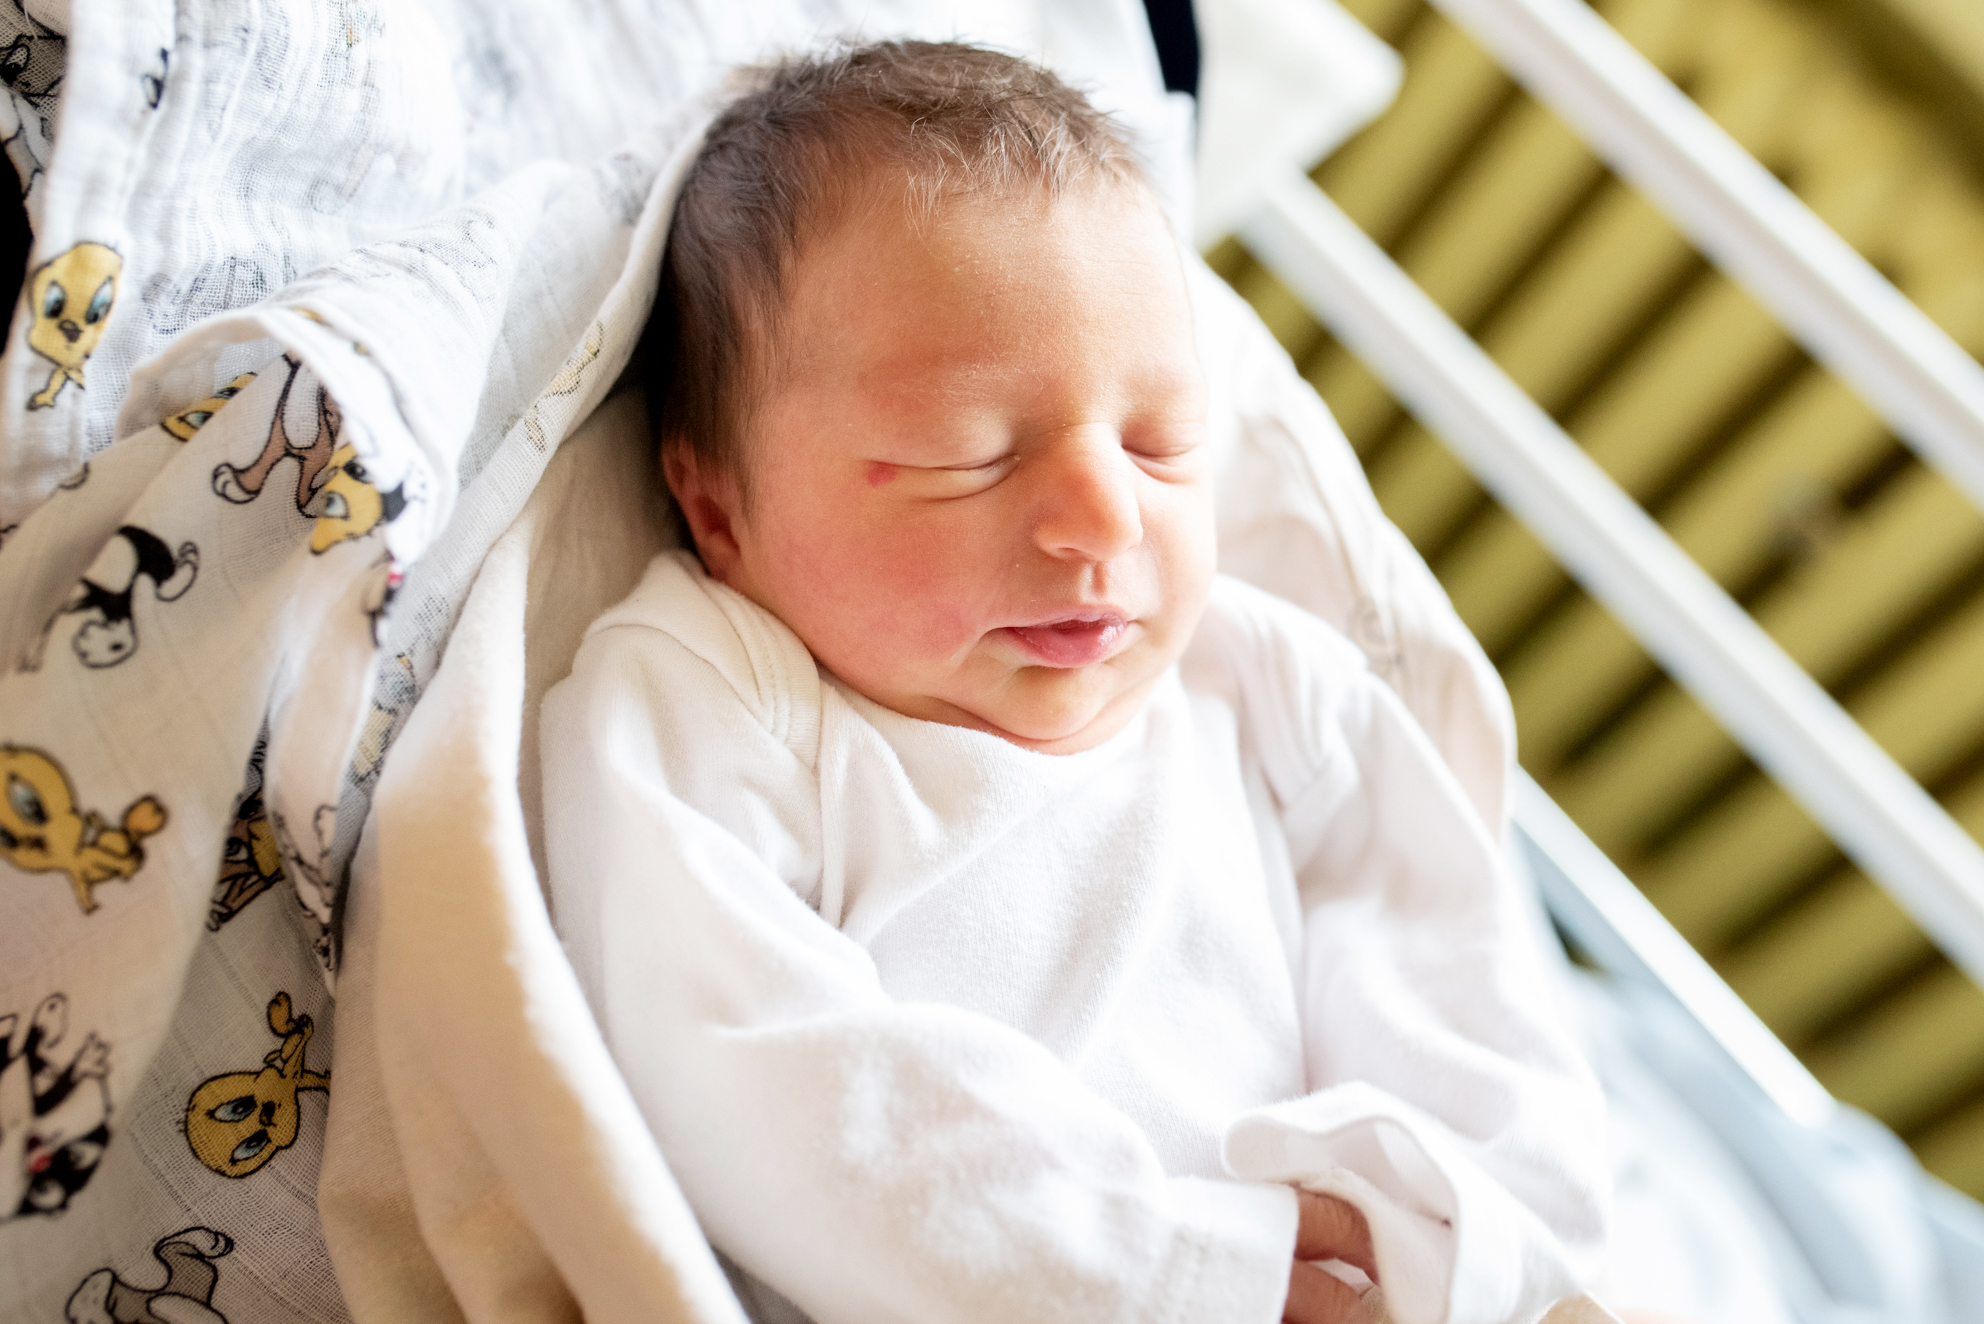 Mała Łucja Kurpińska urodziła się 16.01 o godz. 9.00. Ważyła 3100 g i mierzyła 55 cm. Jej rodzicami są Katarzyna i Michał z Wodzisławia Śląskiego.